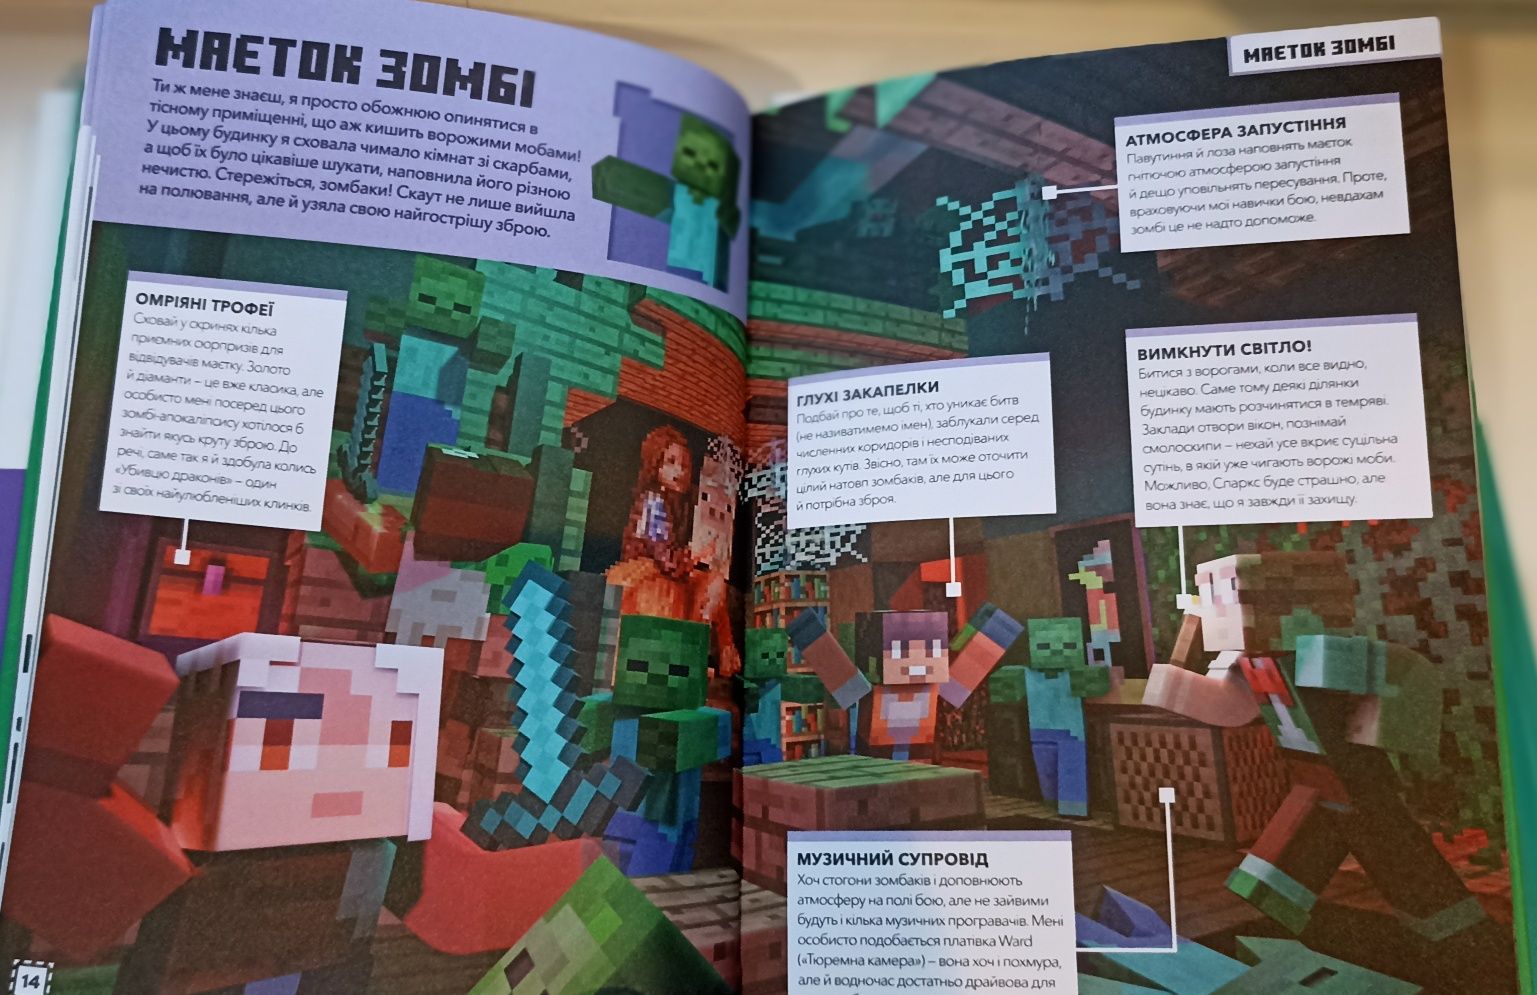 Довідник Майнкрафт Minecraft 3 книги